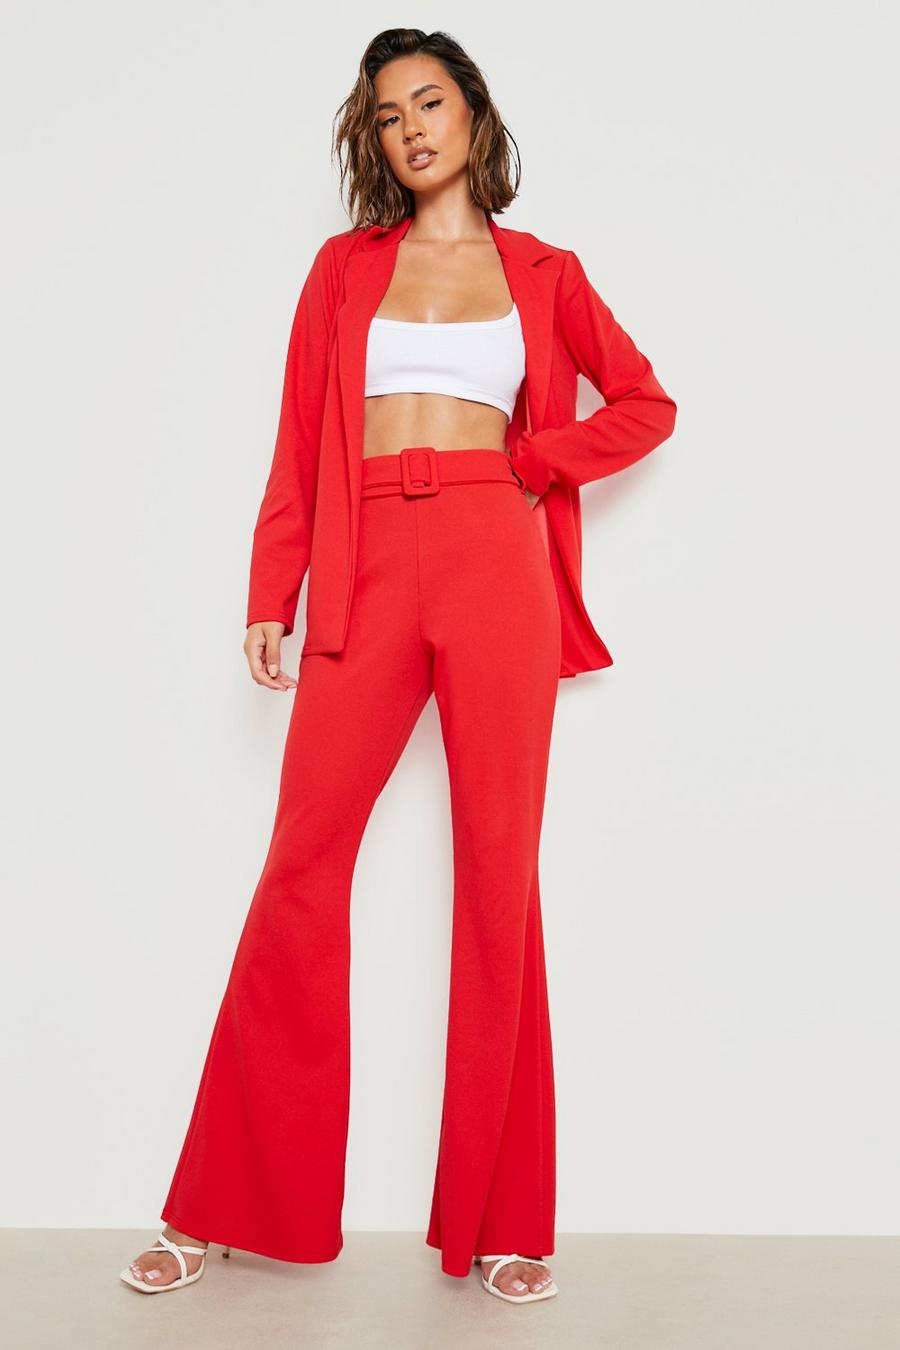 אדום rojo סט מכנסיים מתרחבים עם חגורה ובלייזר ג'רסי